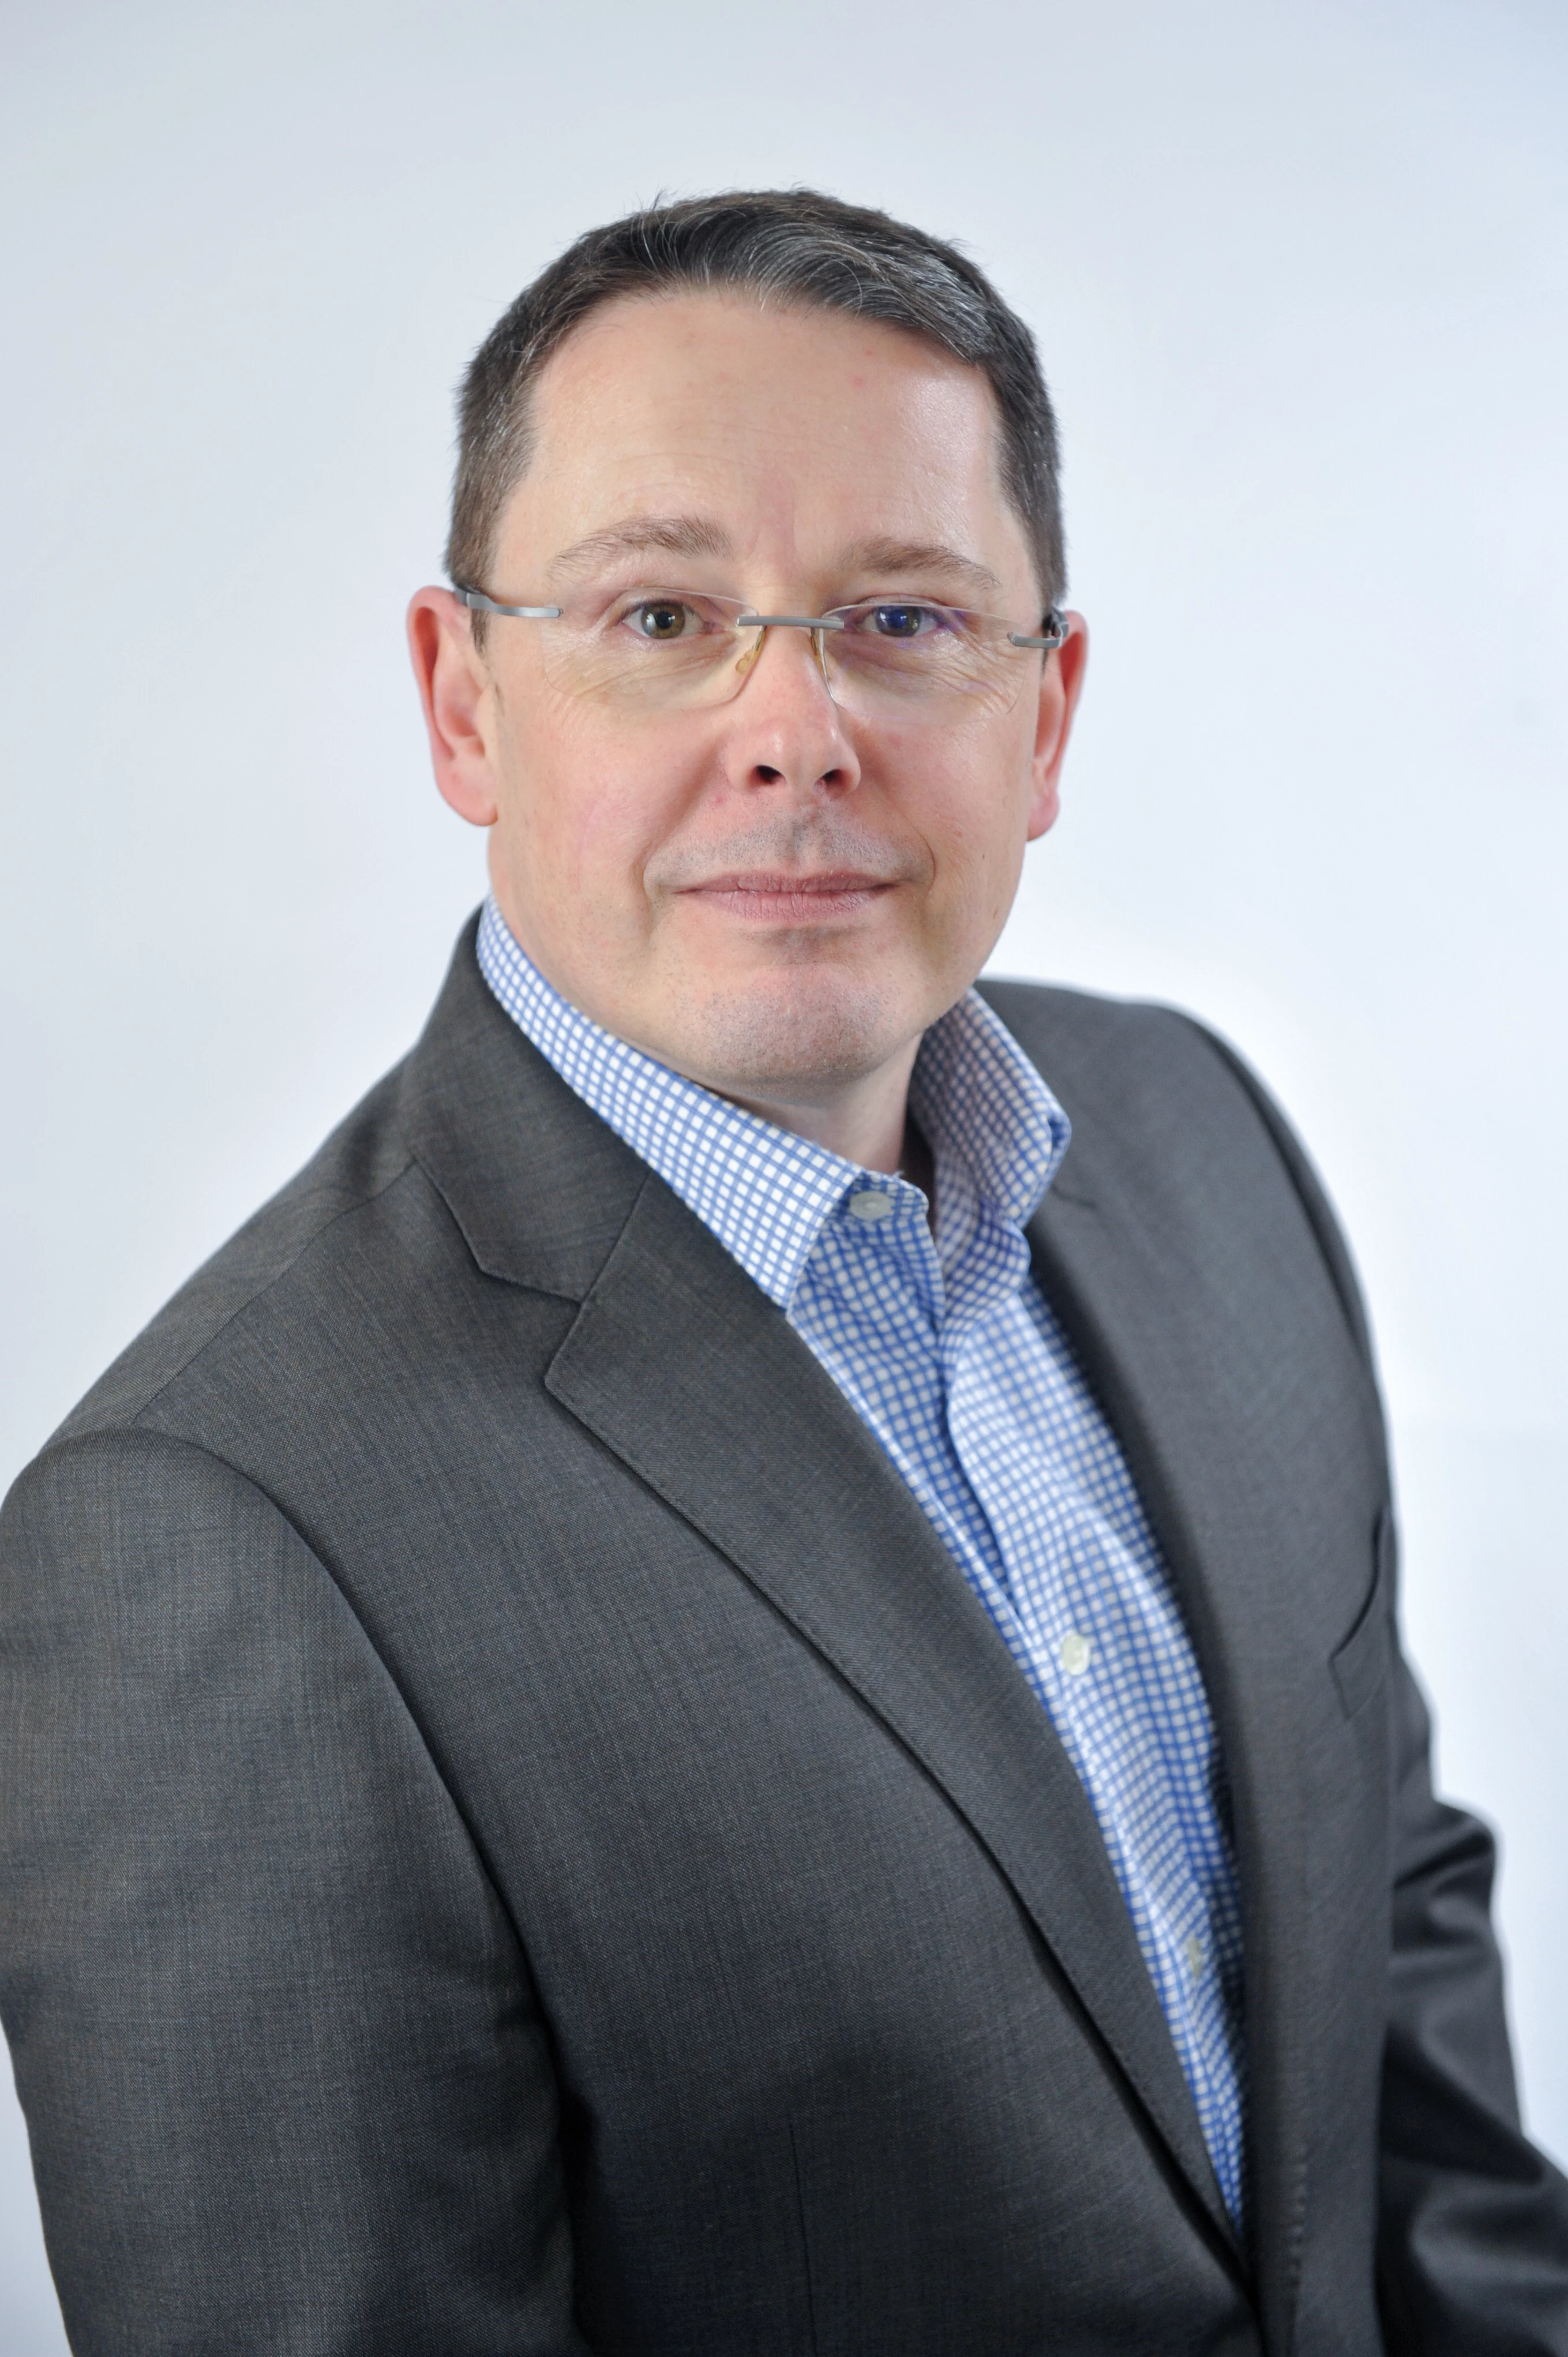 Stuart McGregor, CEO of Osirium